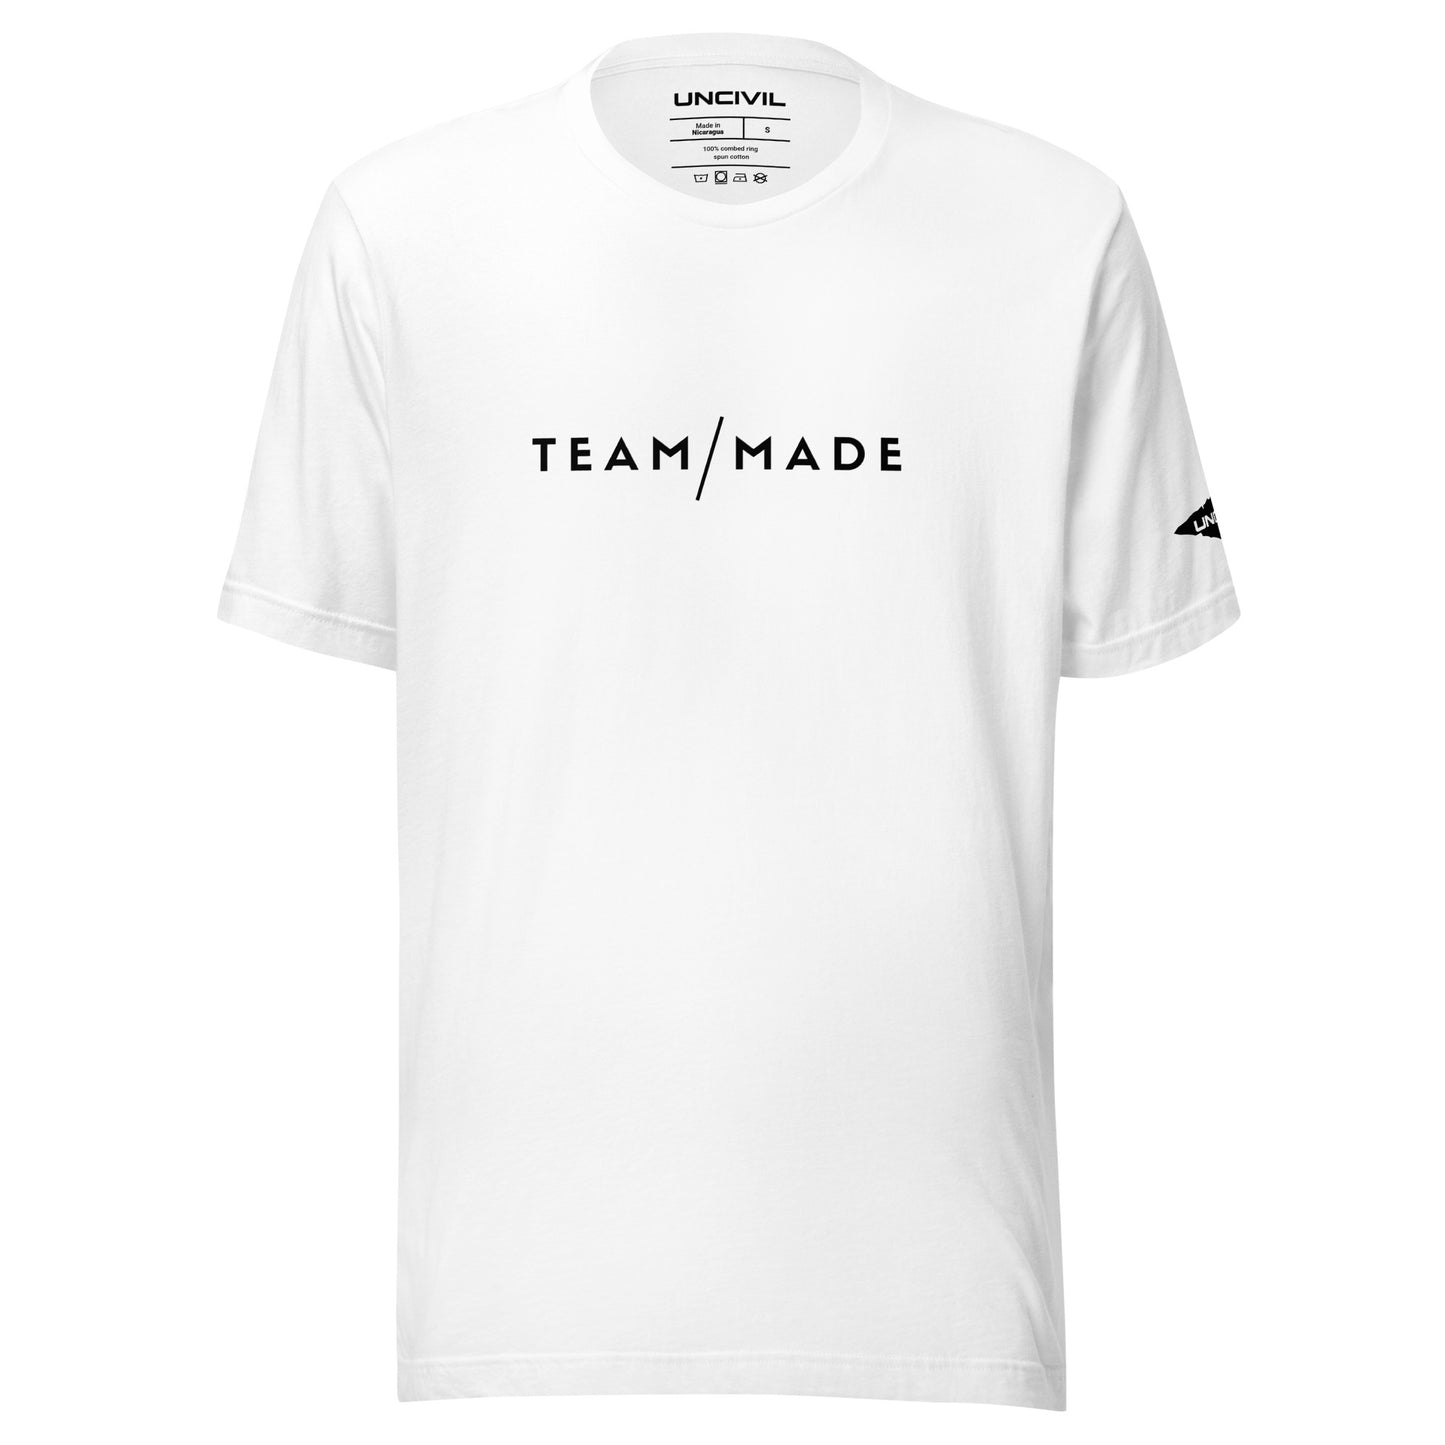 Team Made white t-shirt for men.